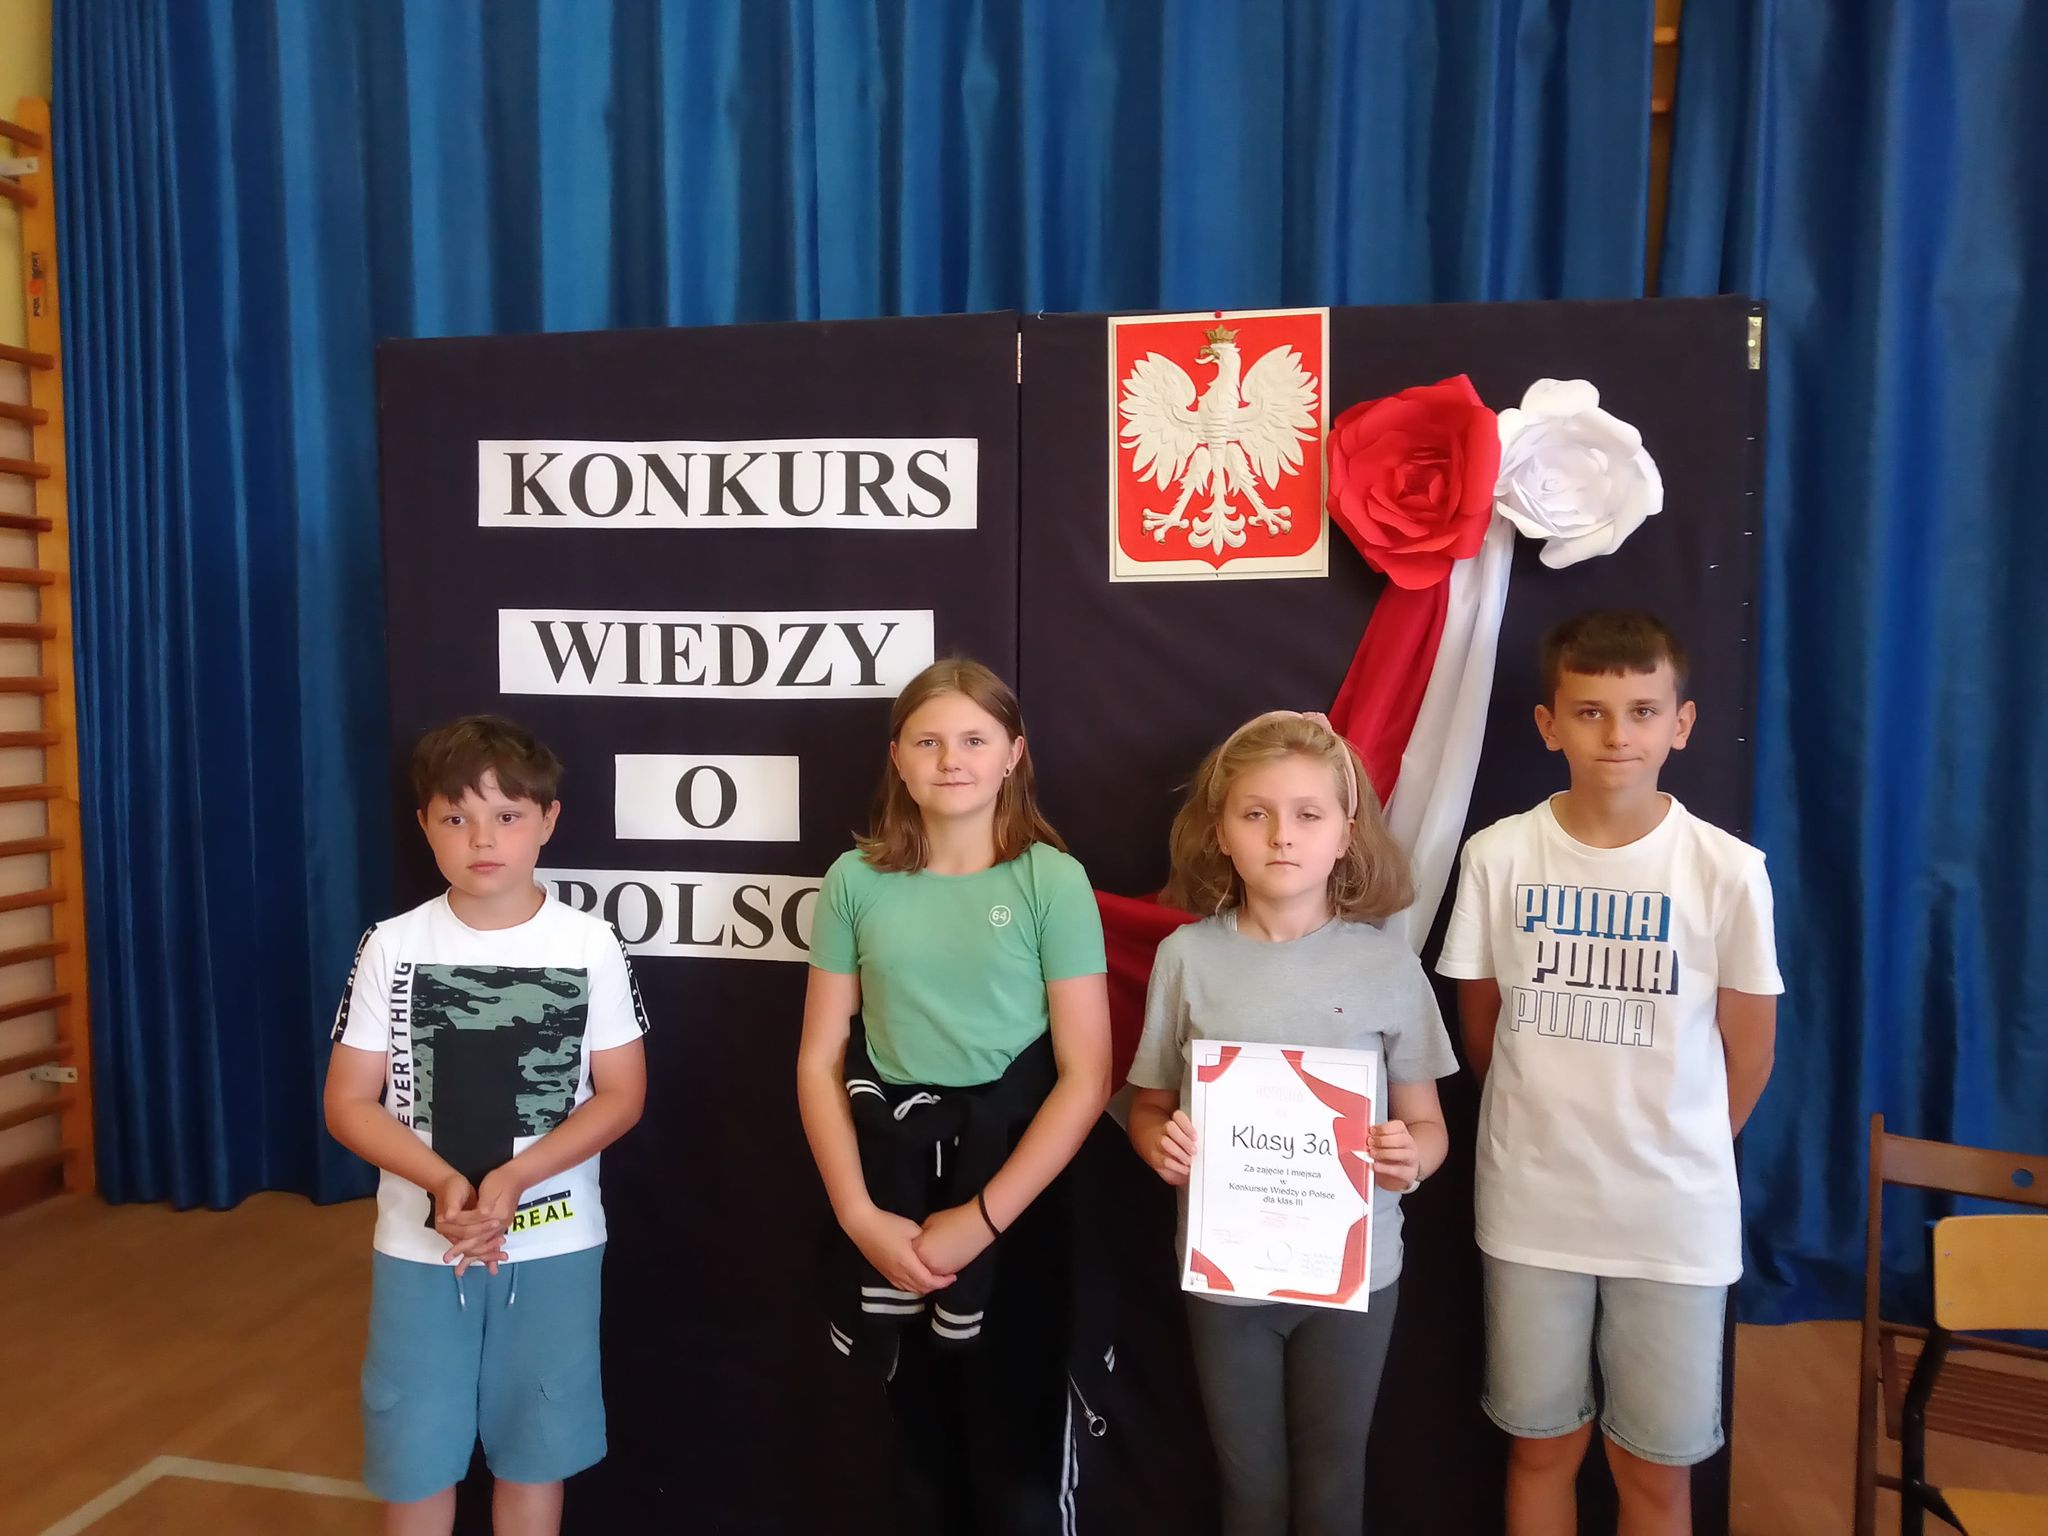 Czworo dzieci. Po środku dziewczynka trzyma w rękach dyplom. Za nimi godło Polski i napis Konkurs wiedzy o Polsce